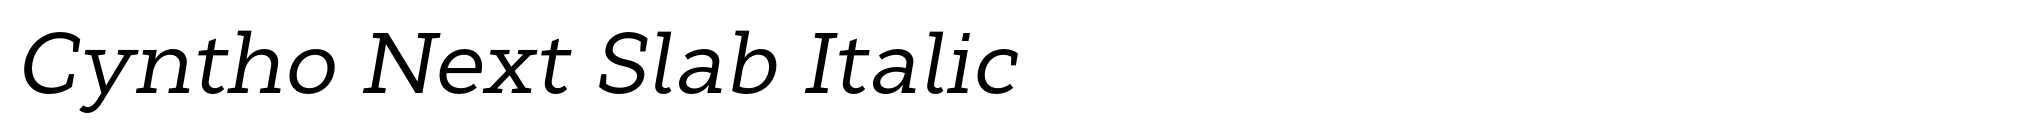 Cyntho Next Slab Italic image